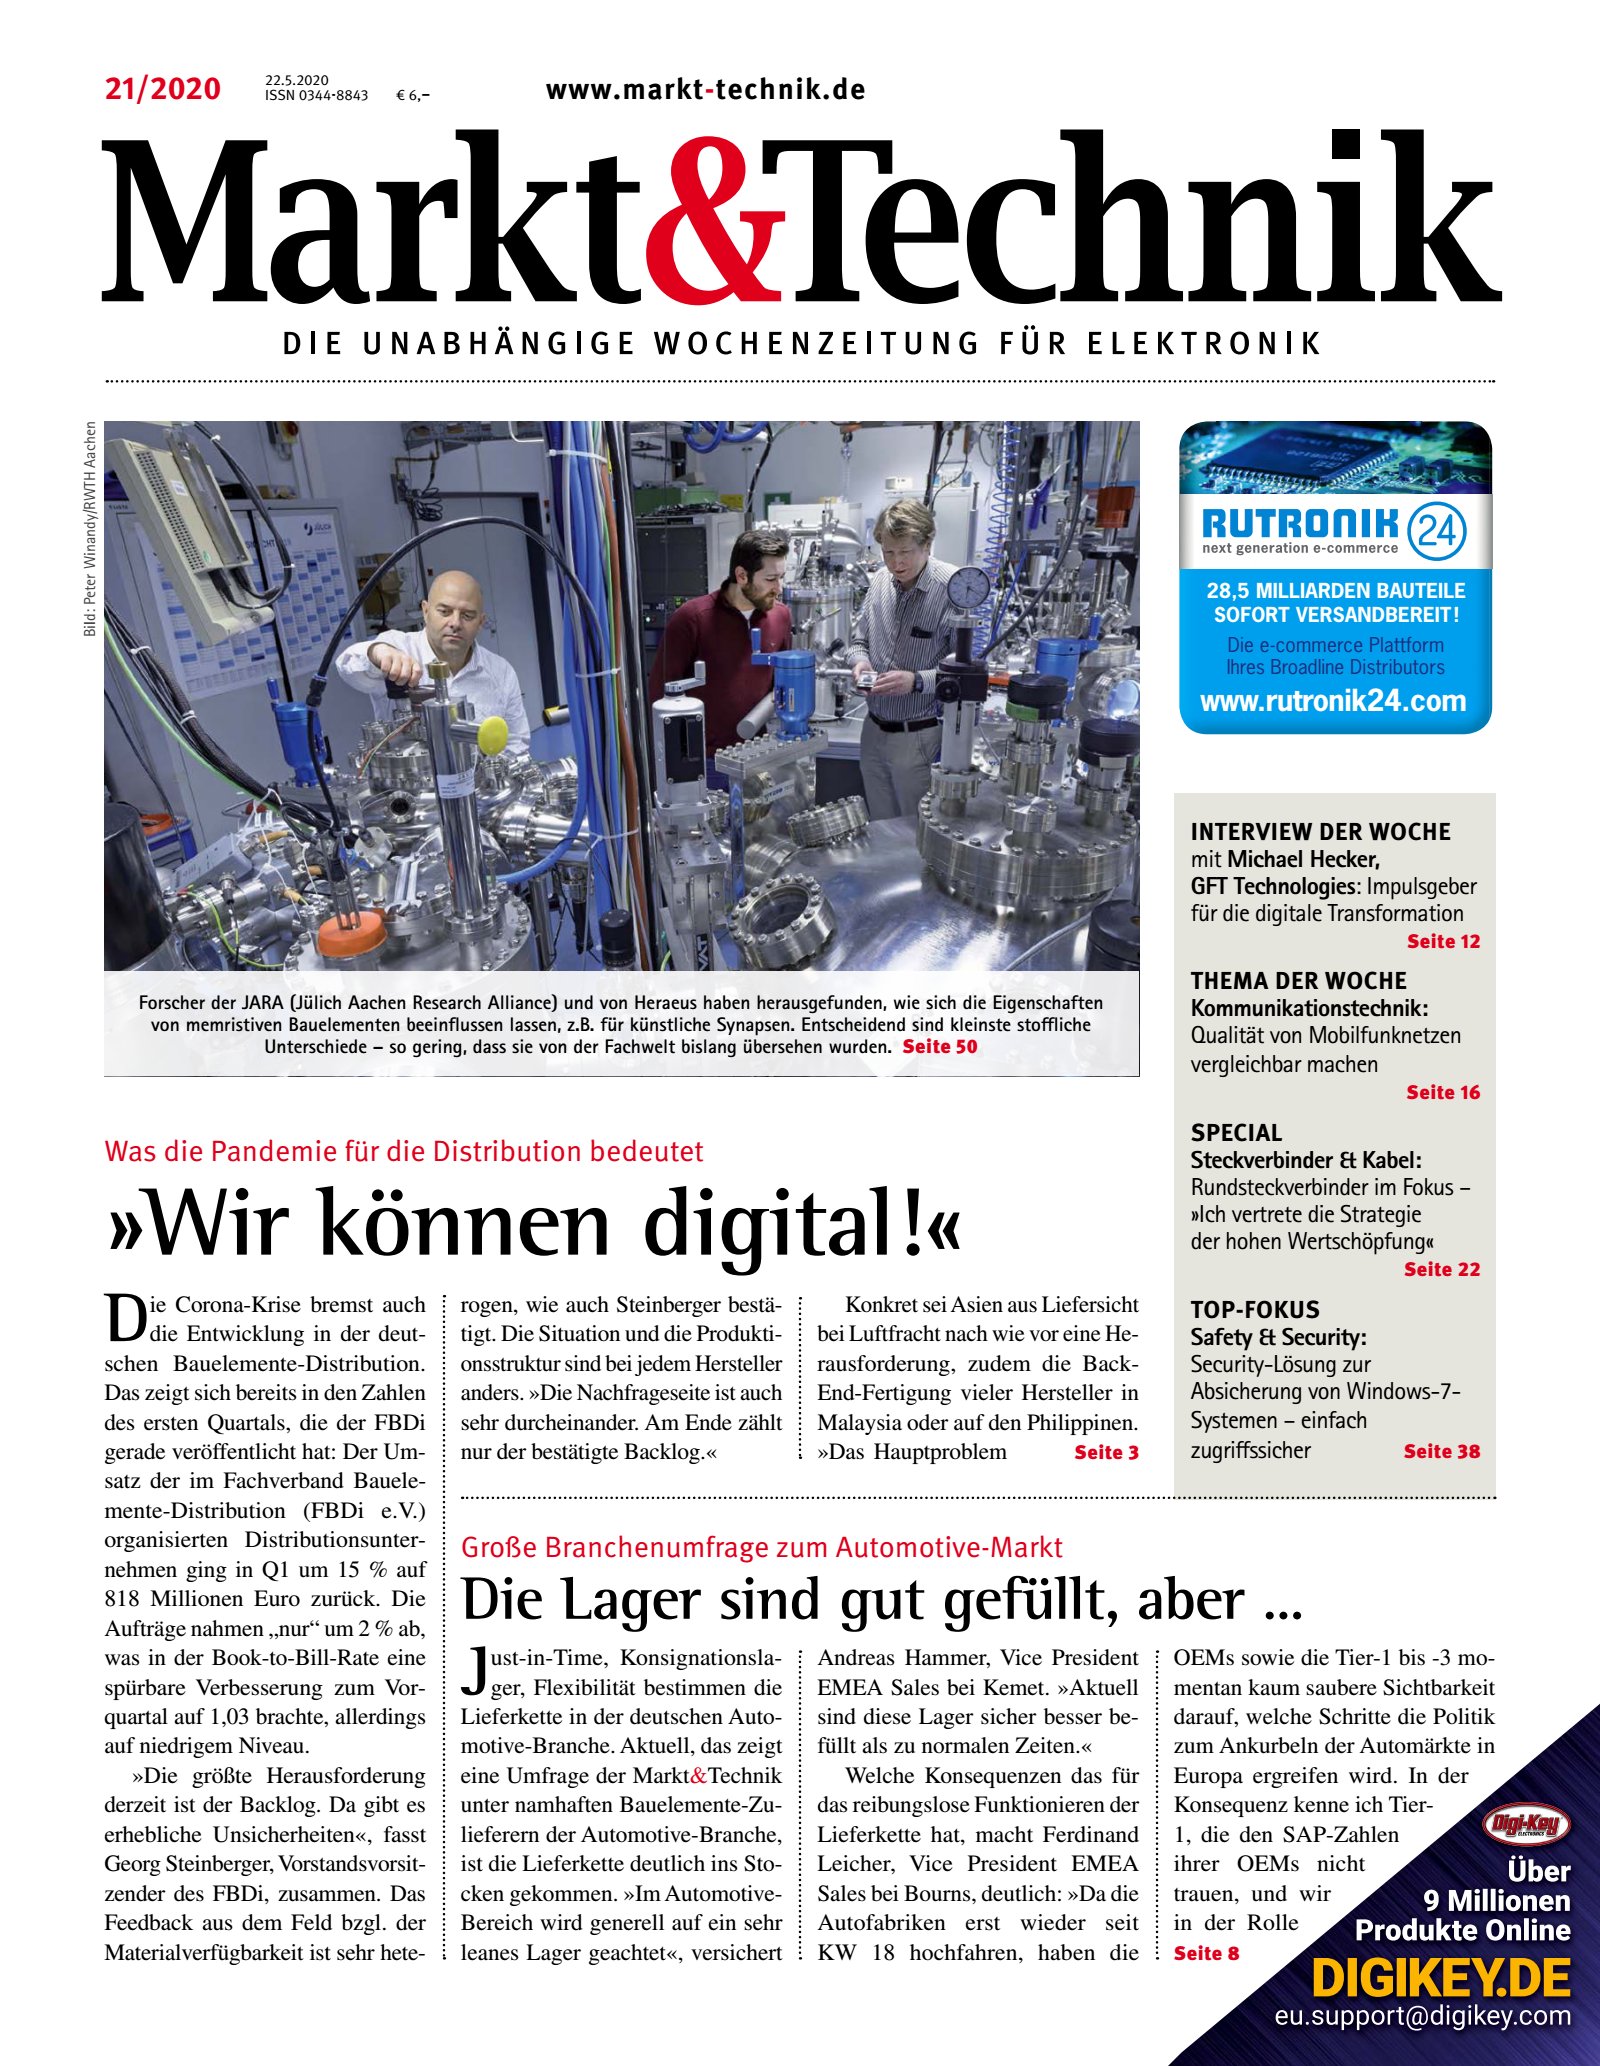 Markt&Technik 21/2020 Digital